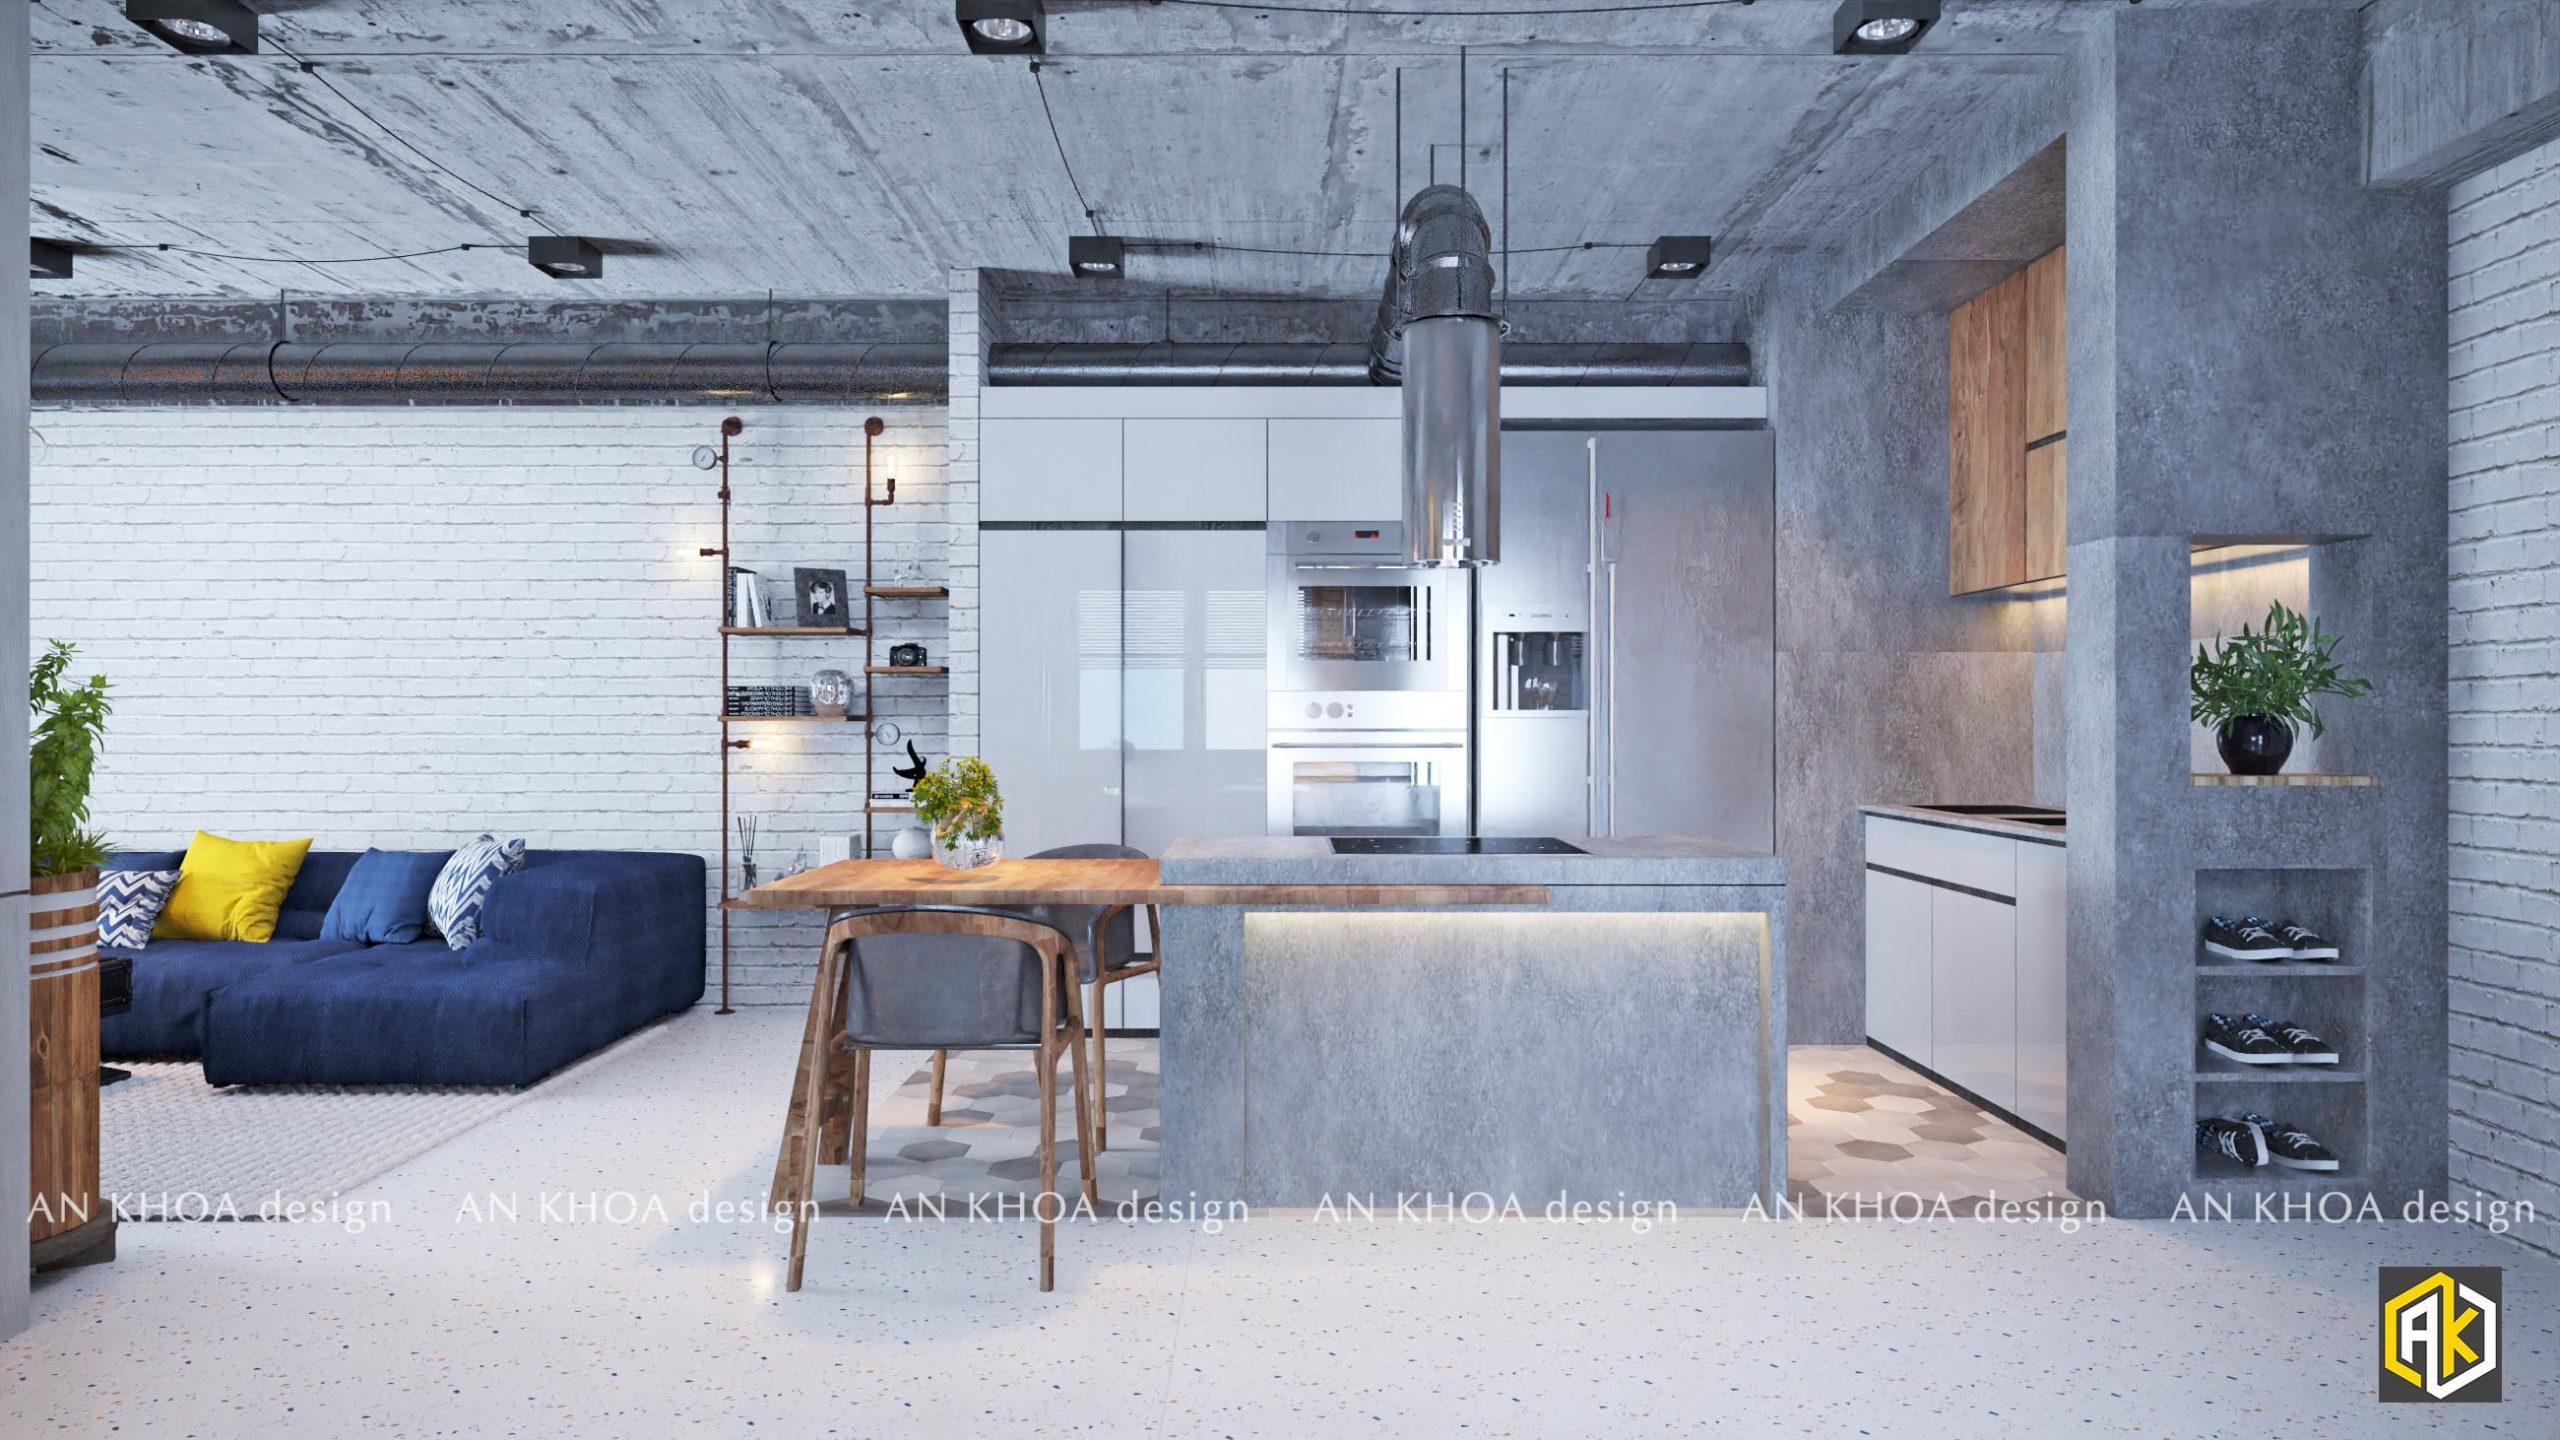 Minh họa thiết kế không gian phòng bếp với tone màu chủ đạo là xám nhẹ